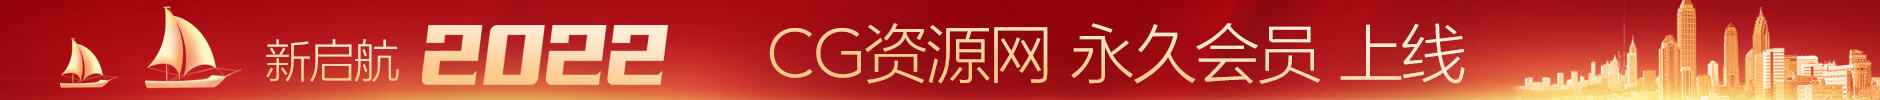 华润娱乐-新讯网娱乐网站用户充值